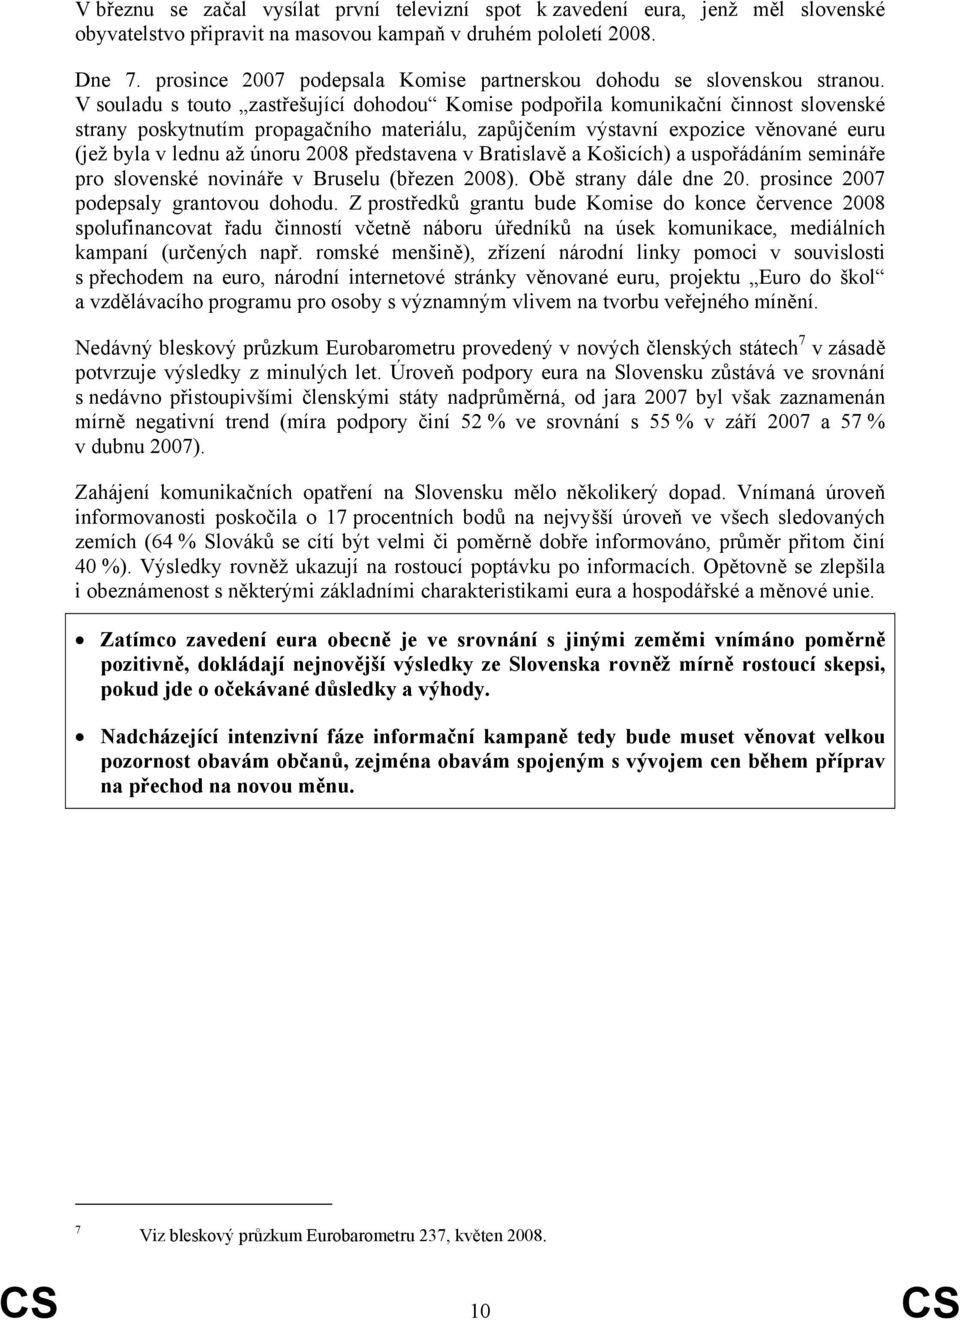 V souladu s touto zastřešující dohodou Komise podpořila komunikační činnost slovenské strany poskytnutím propagačního materiálu, zapůjčením výstavní expozice věnované euru (jež byla v lednu až únoru